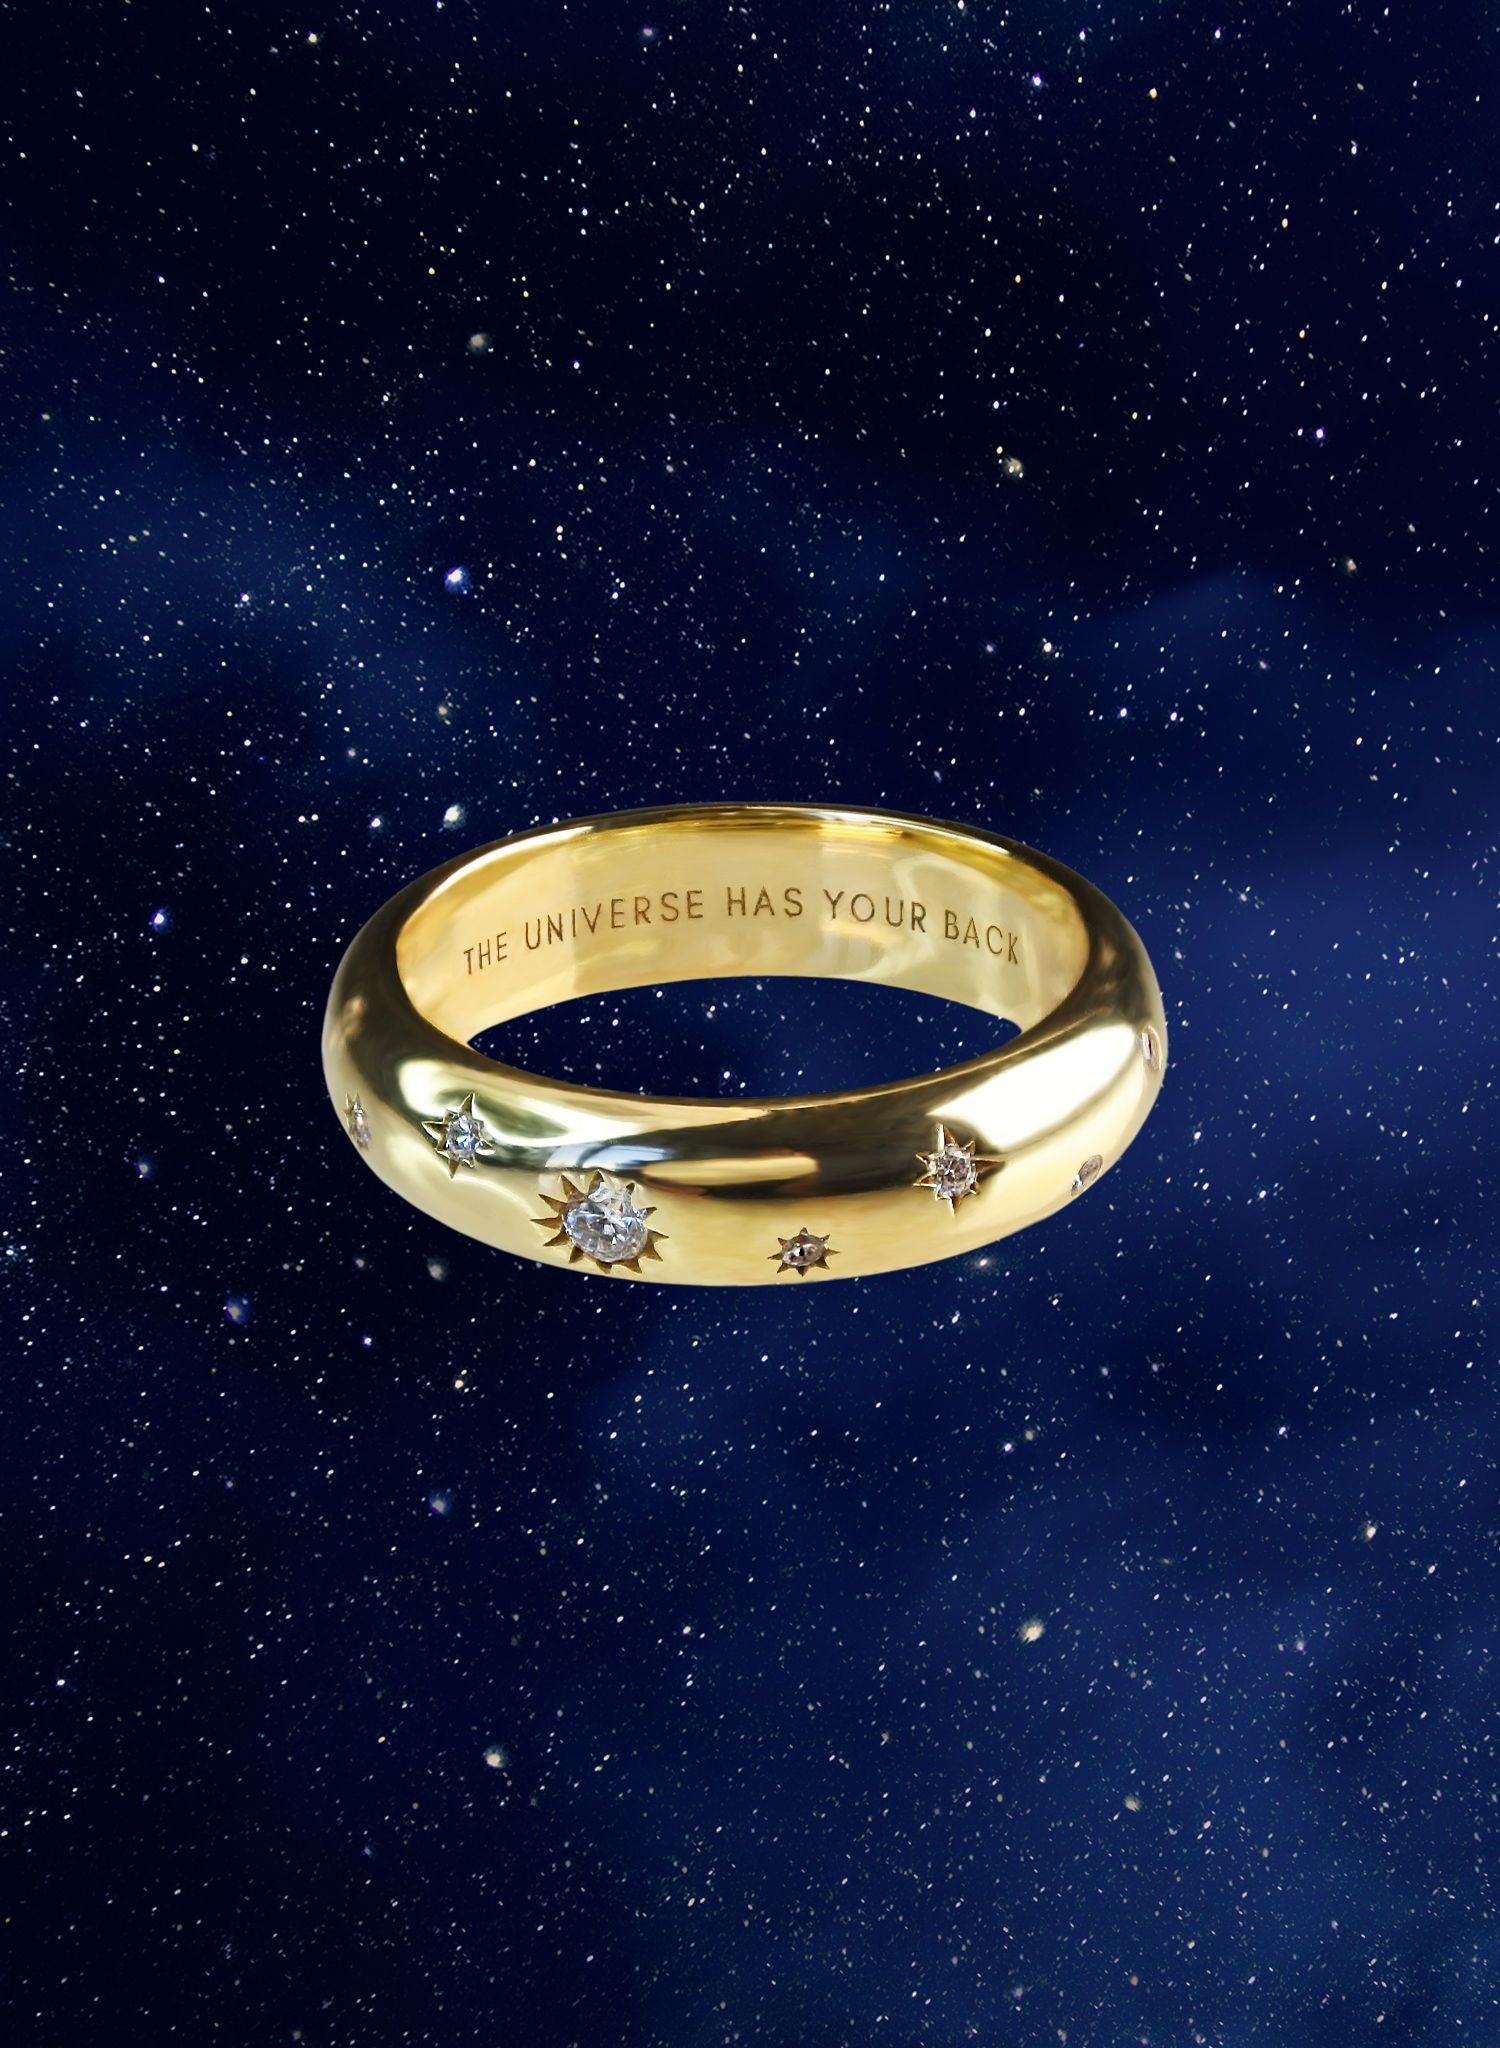 bague-universe-the-universe-has-your-back-plaque-or-bijou-femme-madeinfrance-fait-en-france-Bento-jewelry